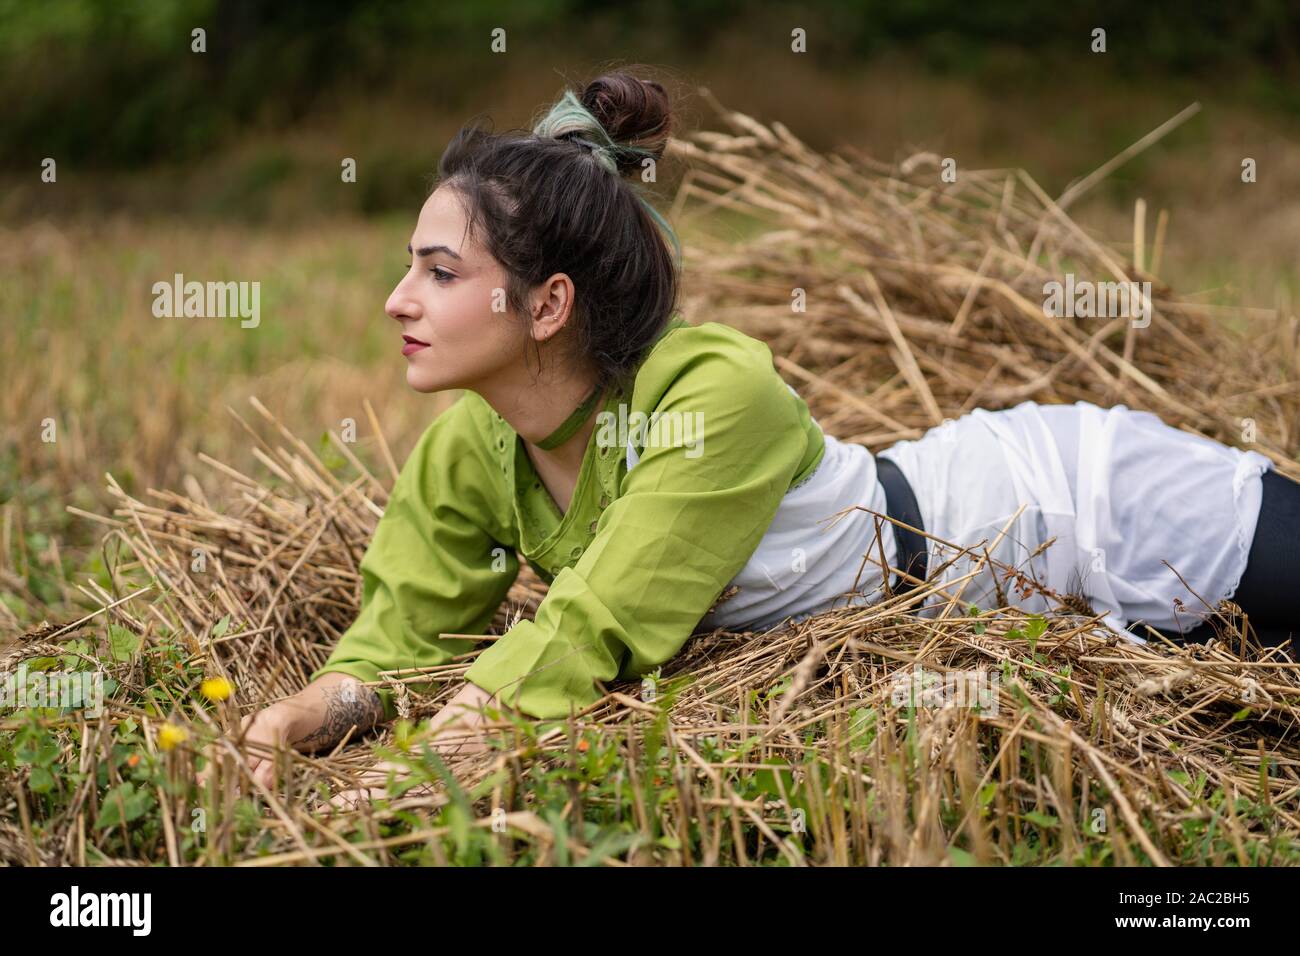 Mädchen liegt in einem Weizenfeld und auf Heu trockenes Gras posiert, Sommersaison. Entspannen und genießen Sie die Natur. Junge Frau im Feld posieren. Einstellung zurücksetzen Stockfoto